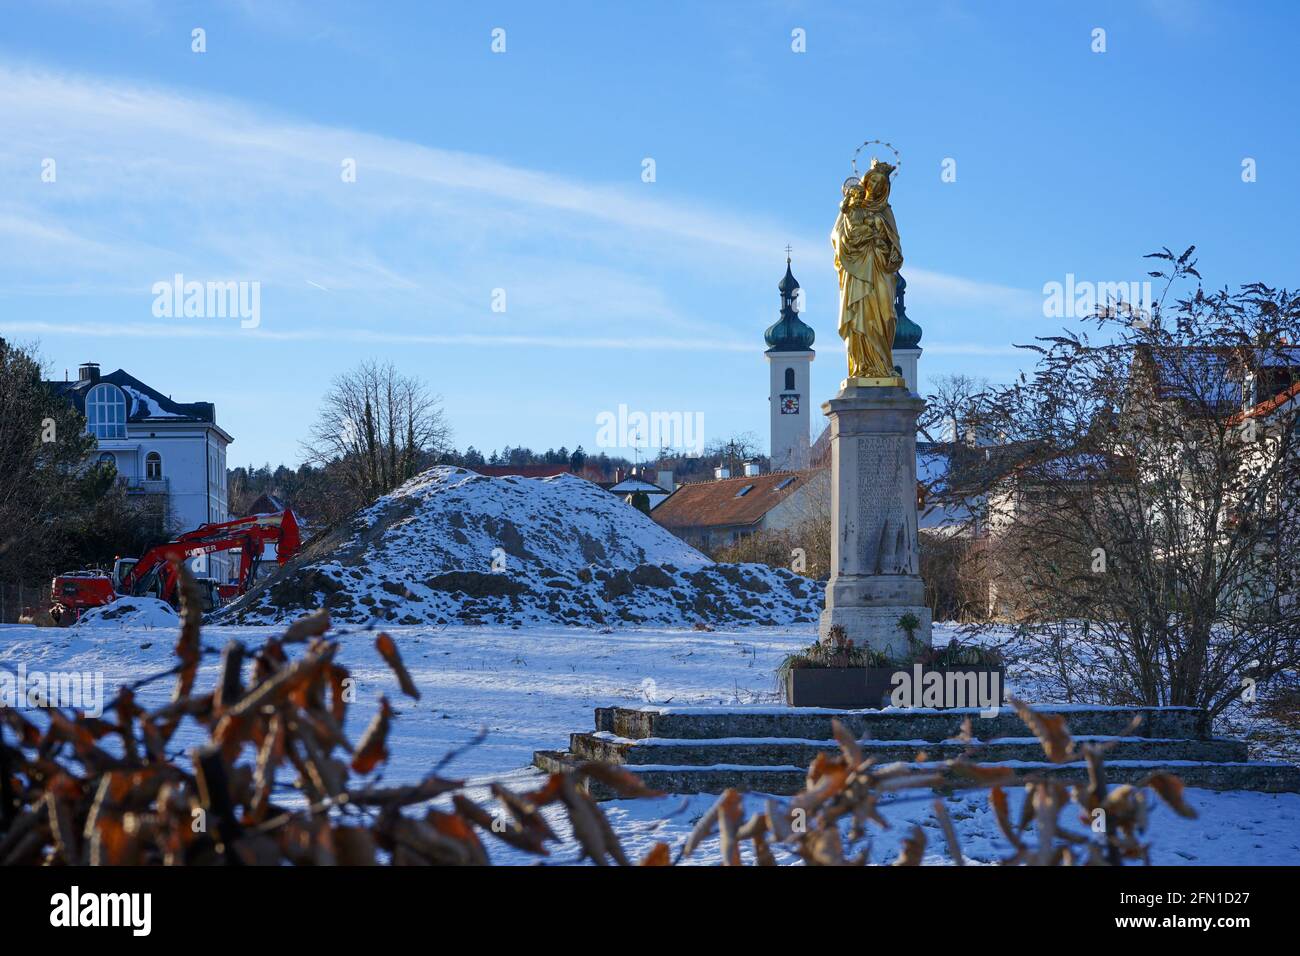 Patrona Bavariae in Tutzing im Winter. Die vergoldete gusseiserne Figur mit Säule stammt aus der Mayer'schen Hofkunstanstalt in München. Stockfoto